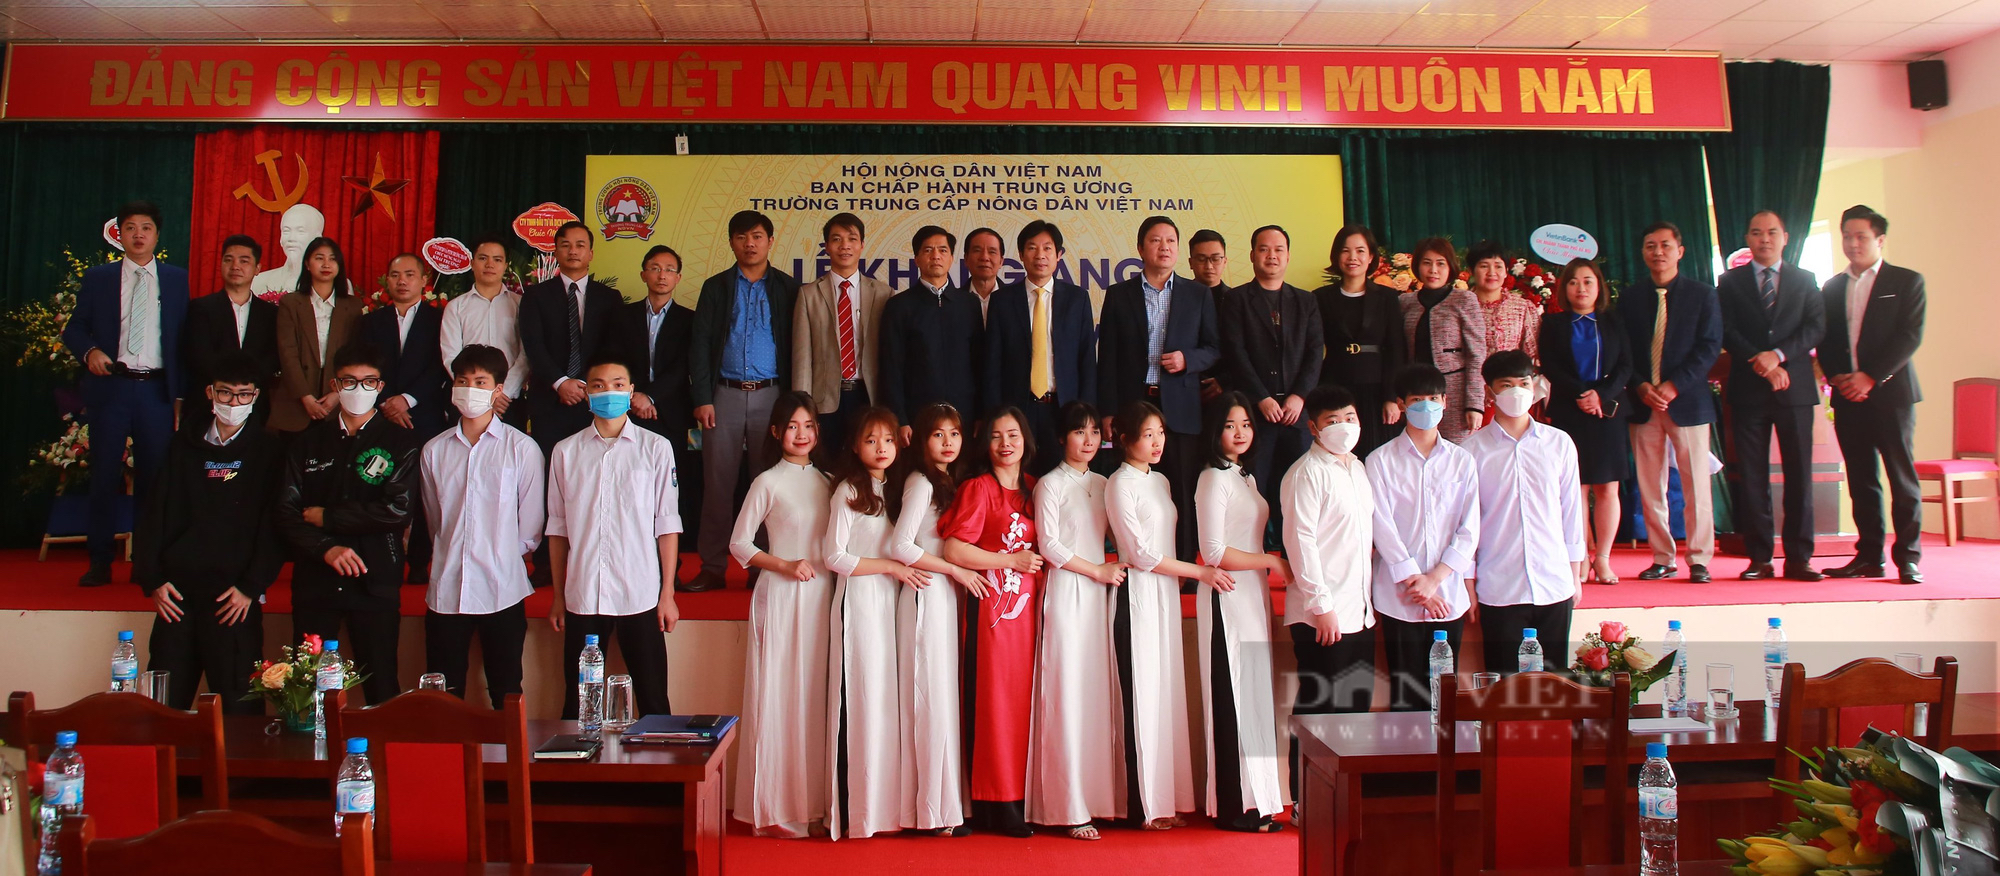 Phó Chủ tịch Trung ương Hội NDVN Nguyễn Xuân Định: Nâng cao chất lượng đào tạo nghề cho lao động nông thôn thời 4.0 - Ảnh 3.